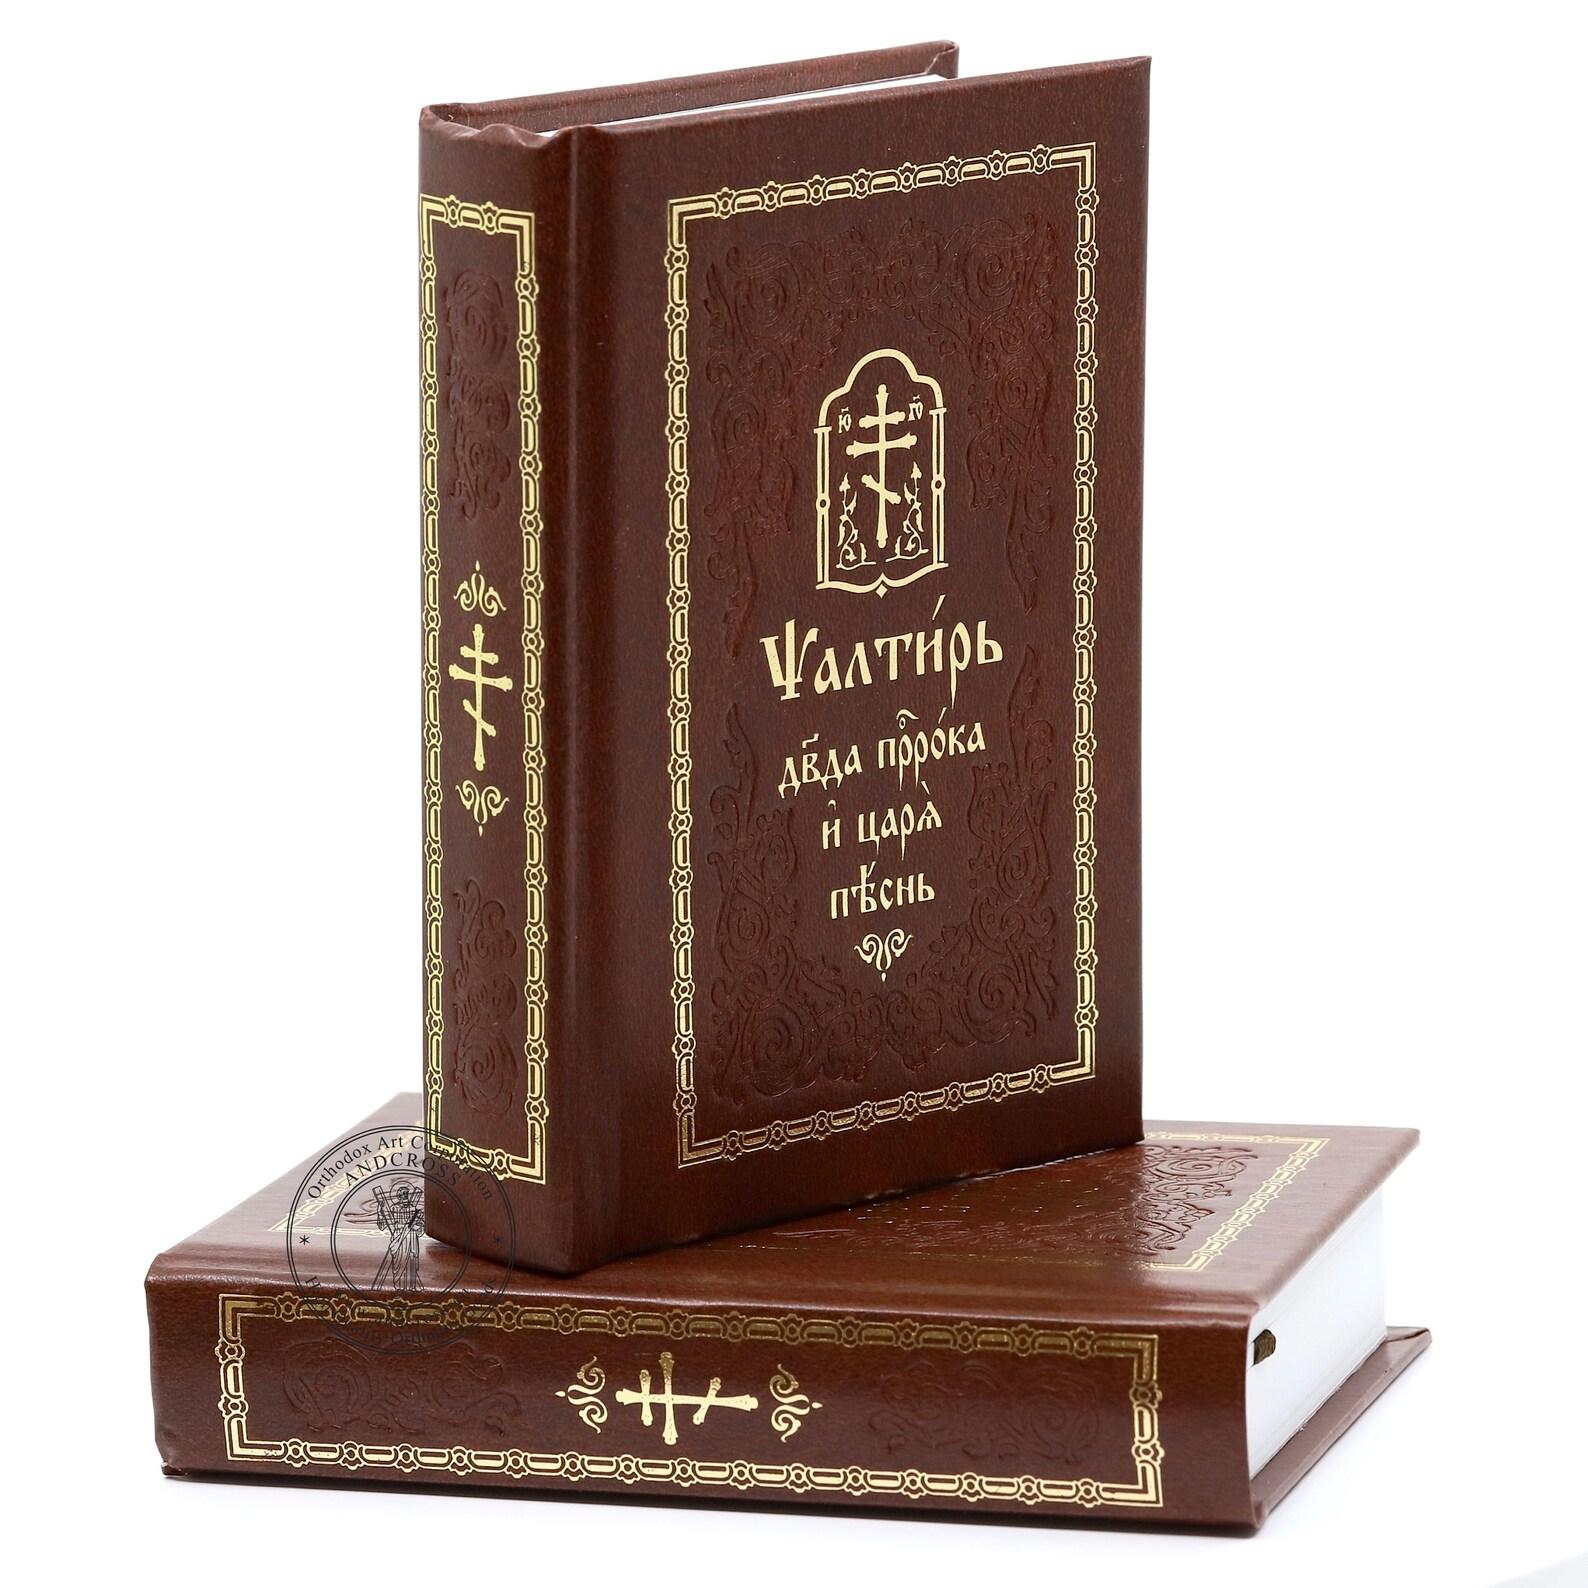 Set Of 2 Orthodox Books